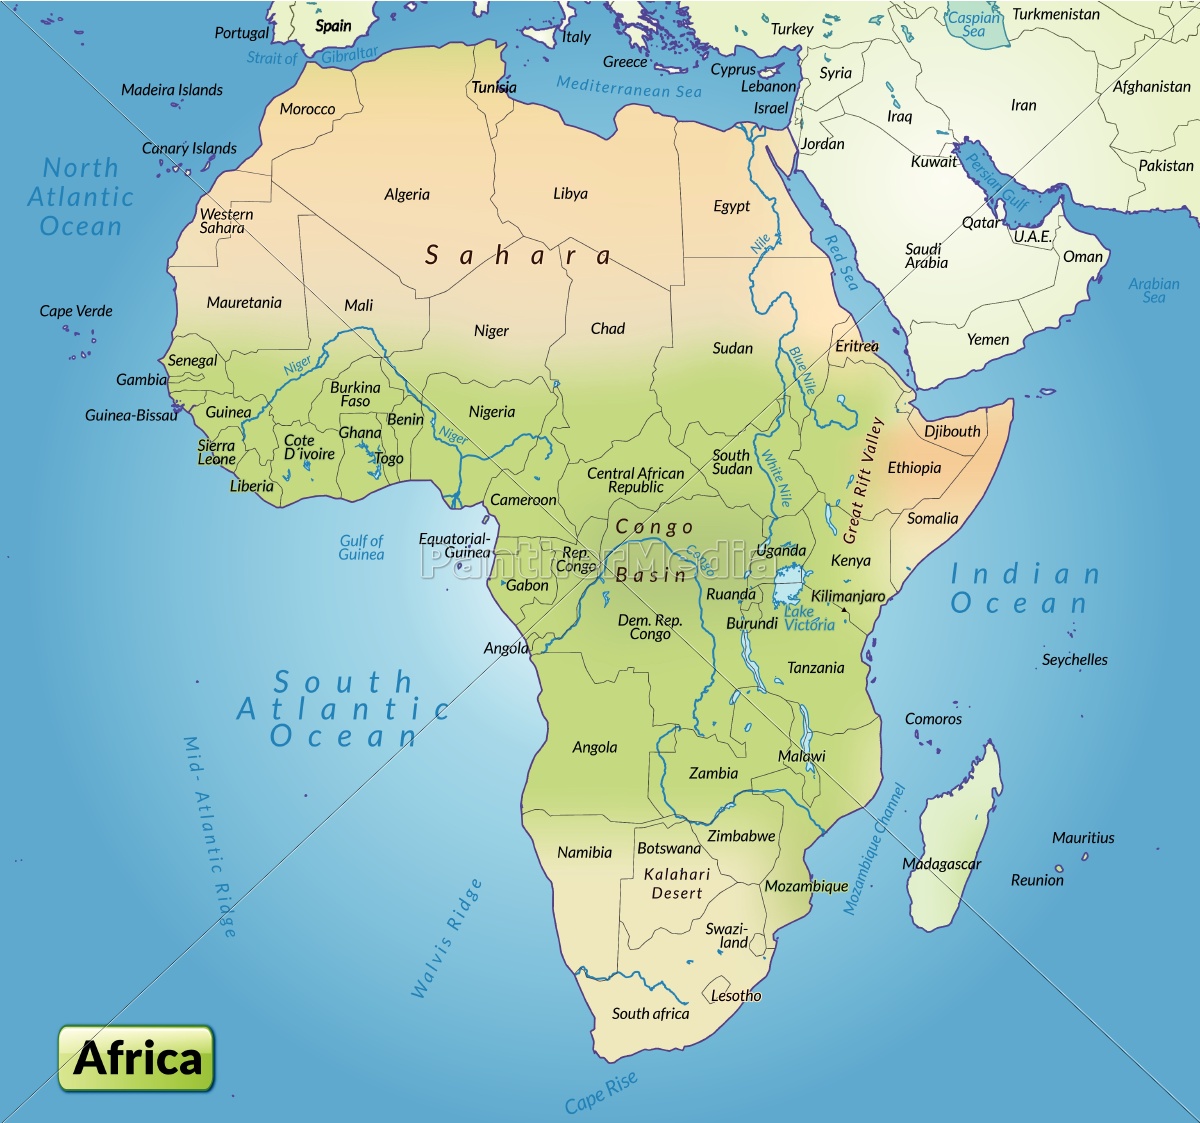 Karte von Afrika als Übersichtskarte - Lizenzfreies Bild #10655039